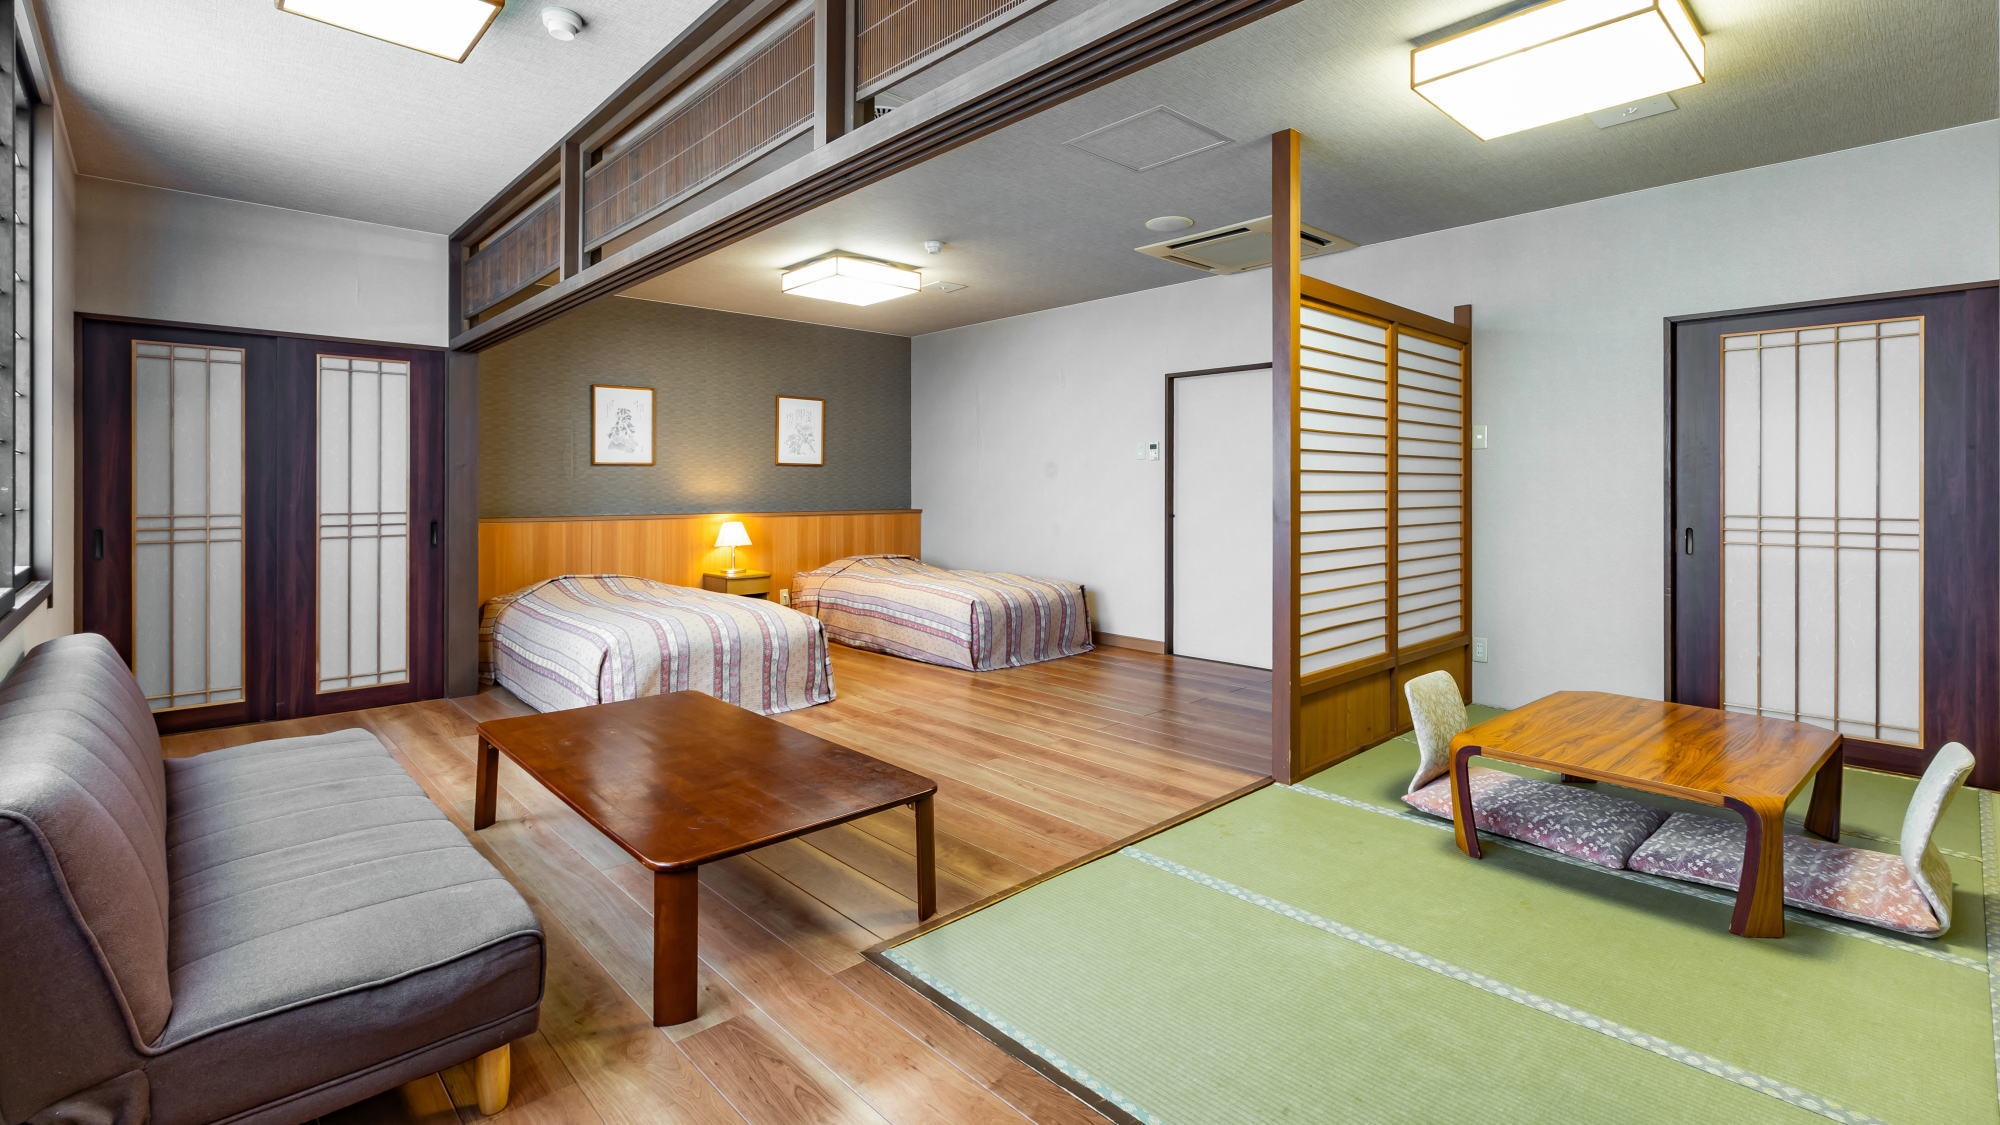 【東館日西合璧房】 這是兩張單人床的房間和8張榻榻米的日式房間。